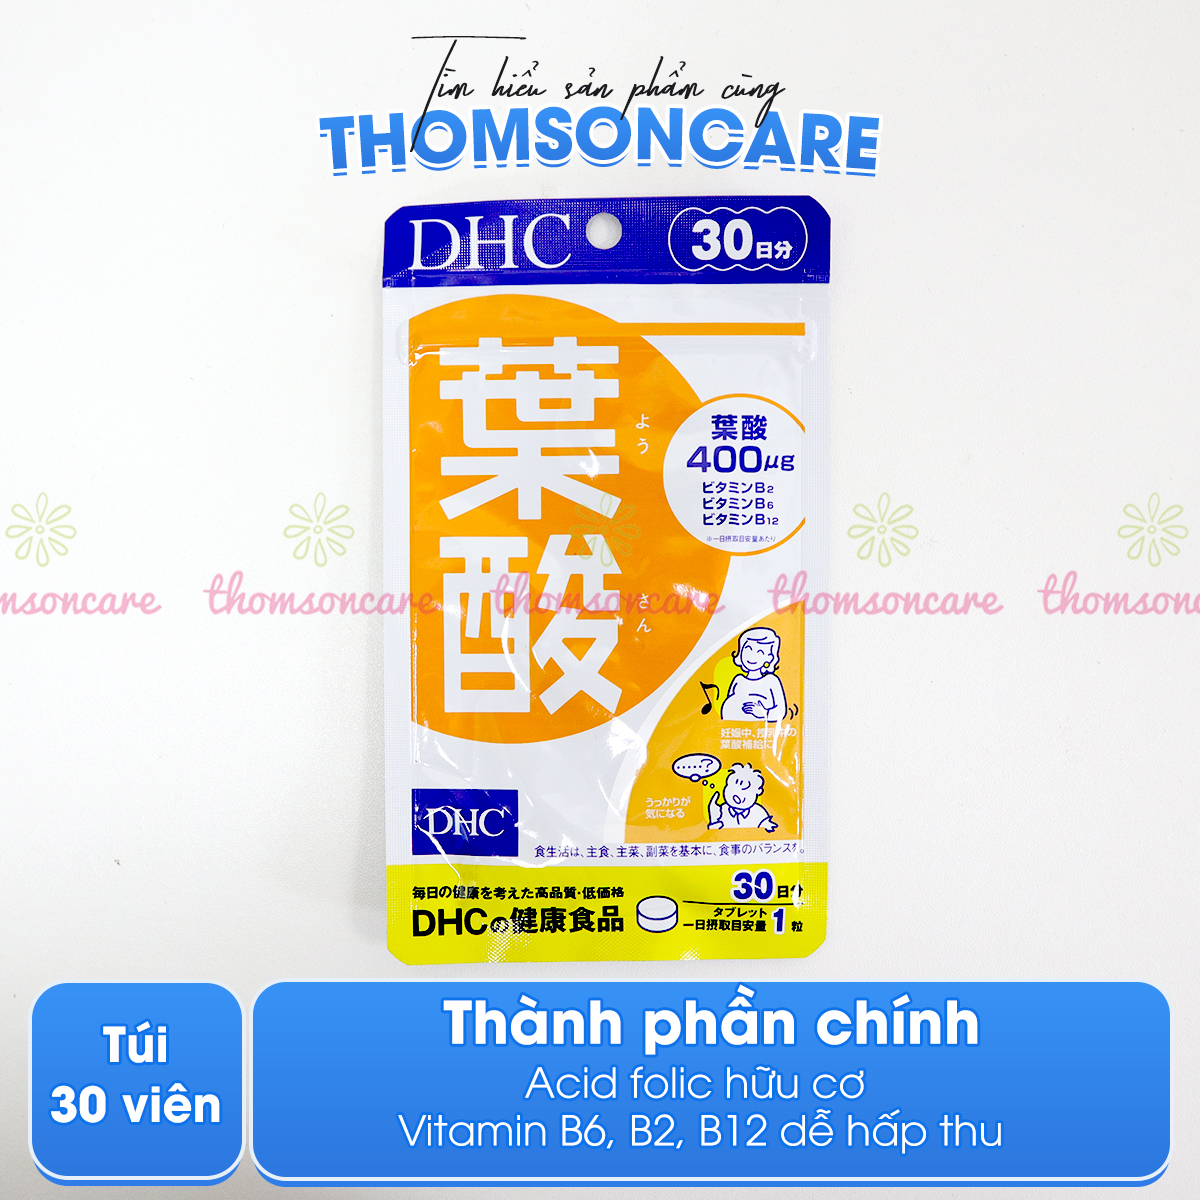 DHC Folic Acid - Bổ sung Vitamin, Axit Folic 400ug 0.4mg cho bà bầu của nhật trước và sau khi sinh - Từ DHC Nhật Bản